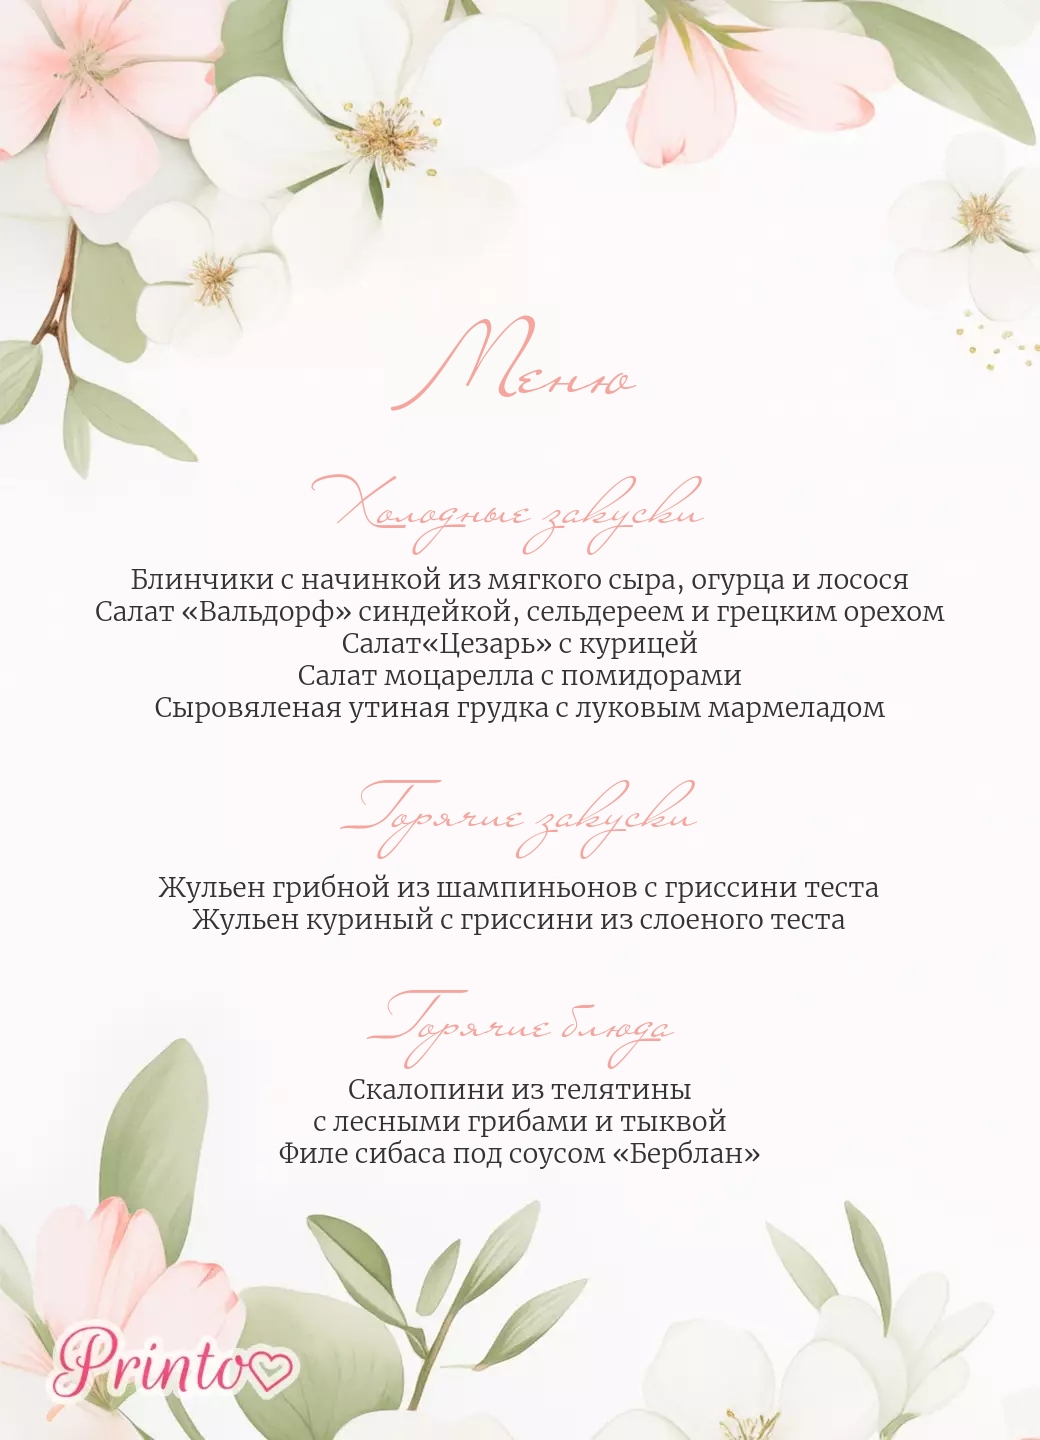 Шаблон свадебного меню "Весенний сад"